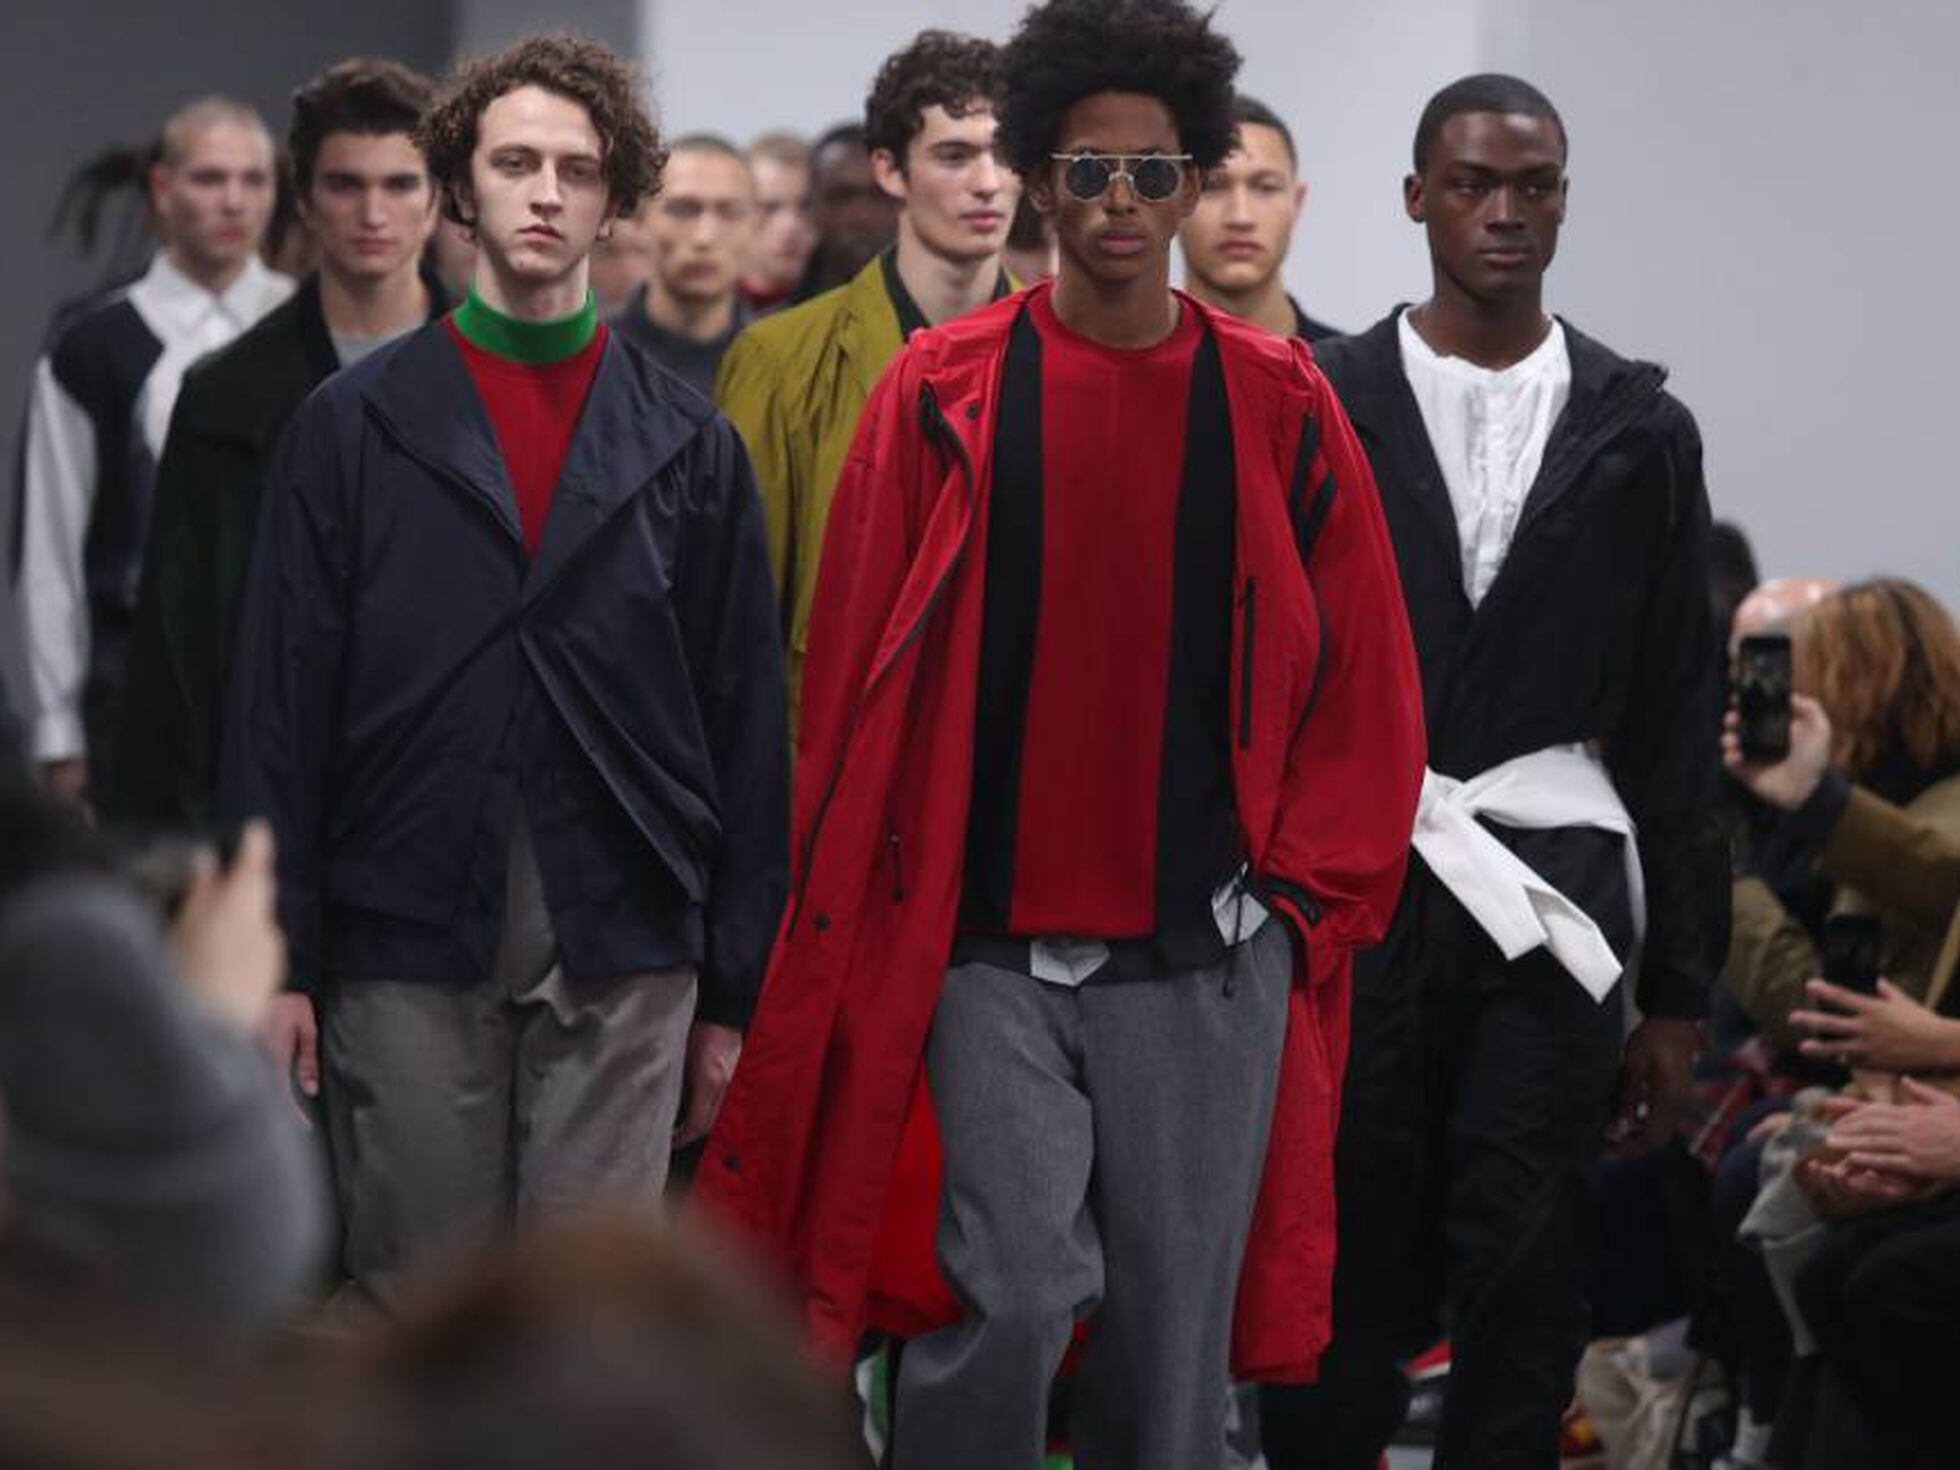 Las mejores ofertas en Trench Louis Vuitton abrigos, chaquetas y